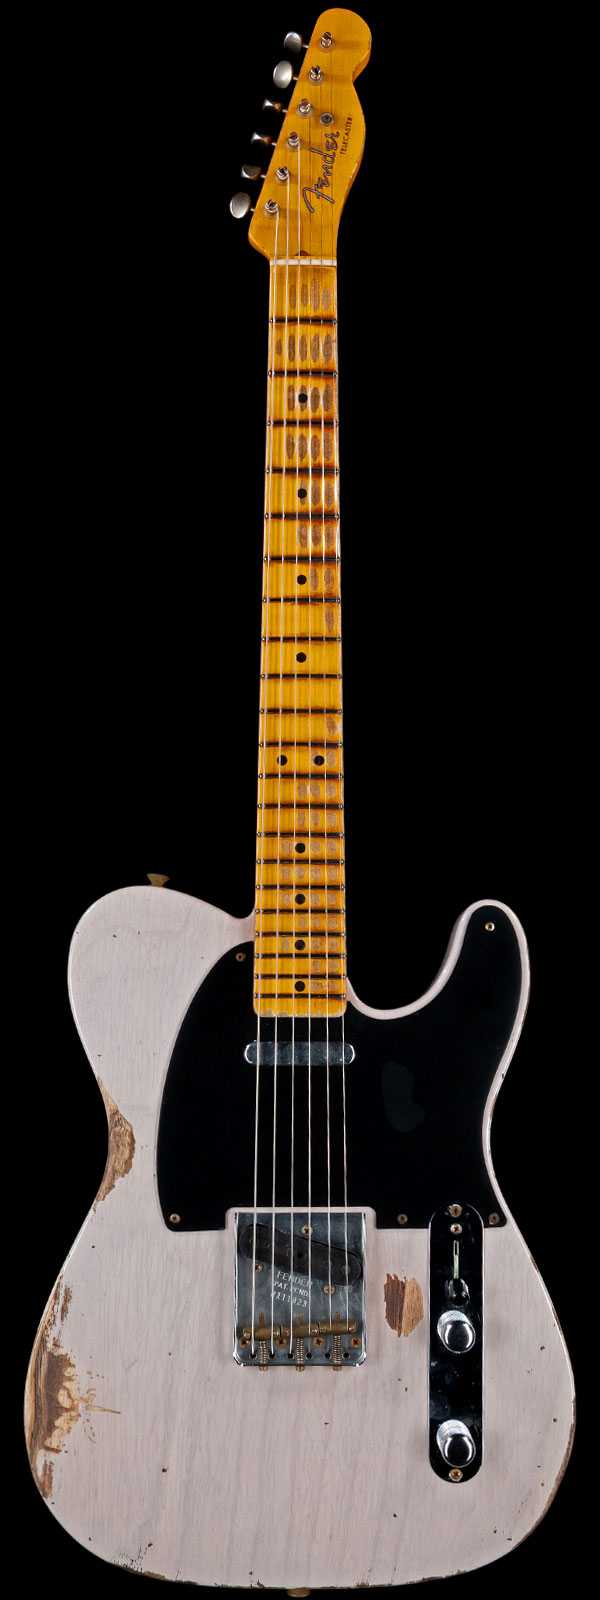 Fender Custom Shop 1952 Telecaster Heavy Relic Maple Neck Dirty White Blonde